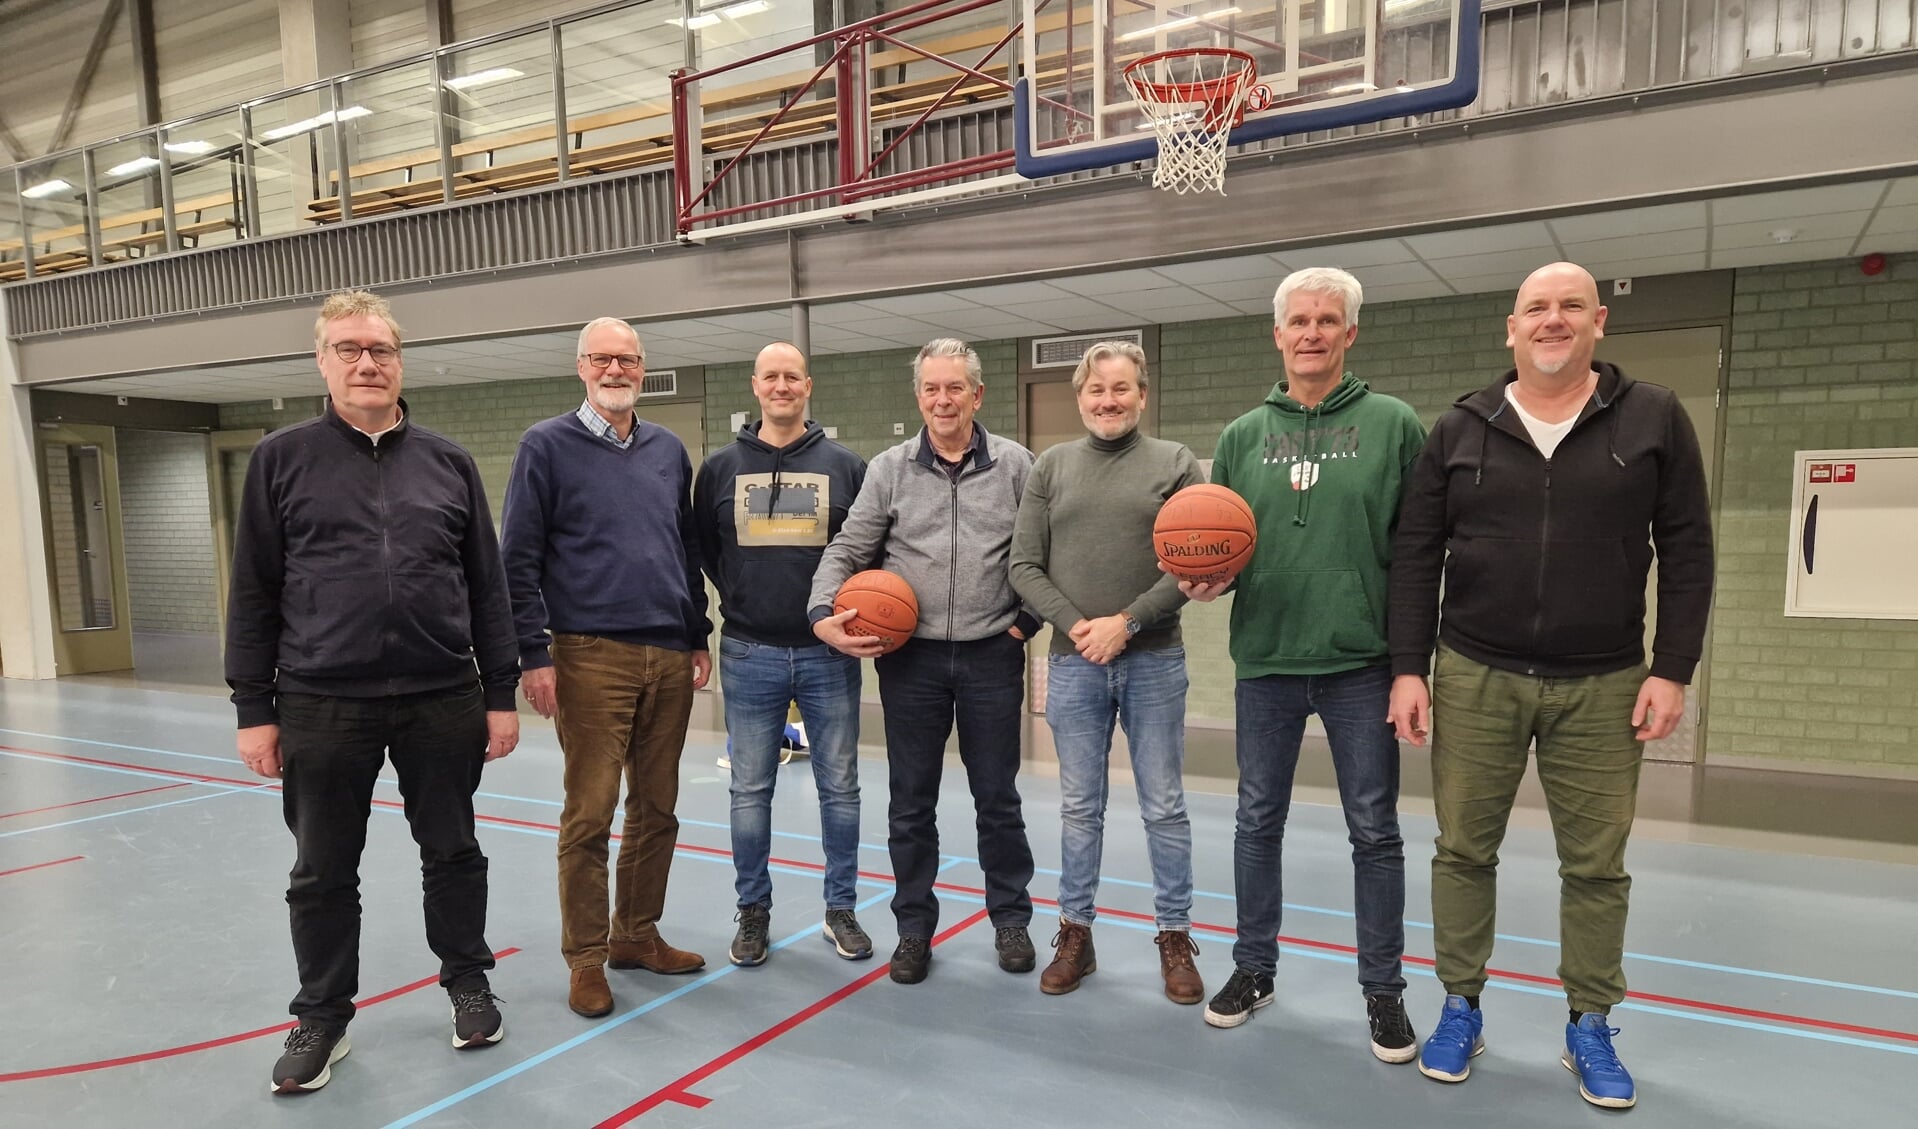 • Trots op vijftig jaar basketbal in Capelle aan den IJssel.